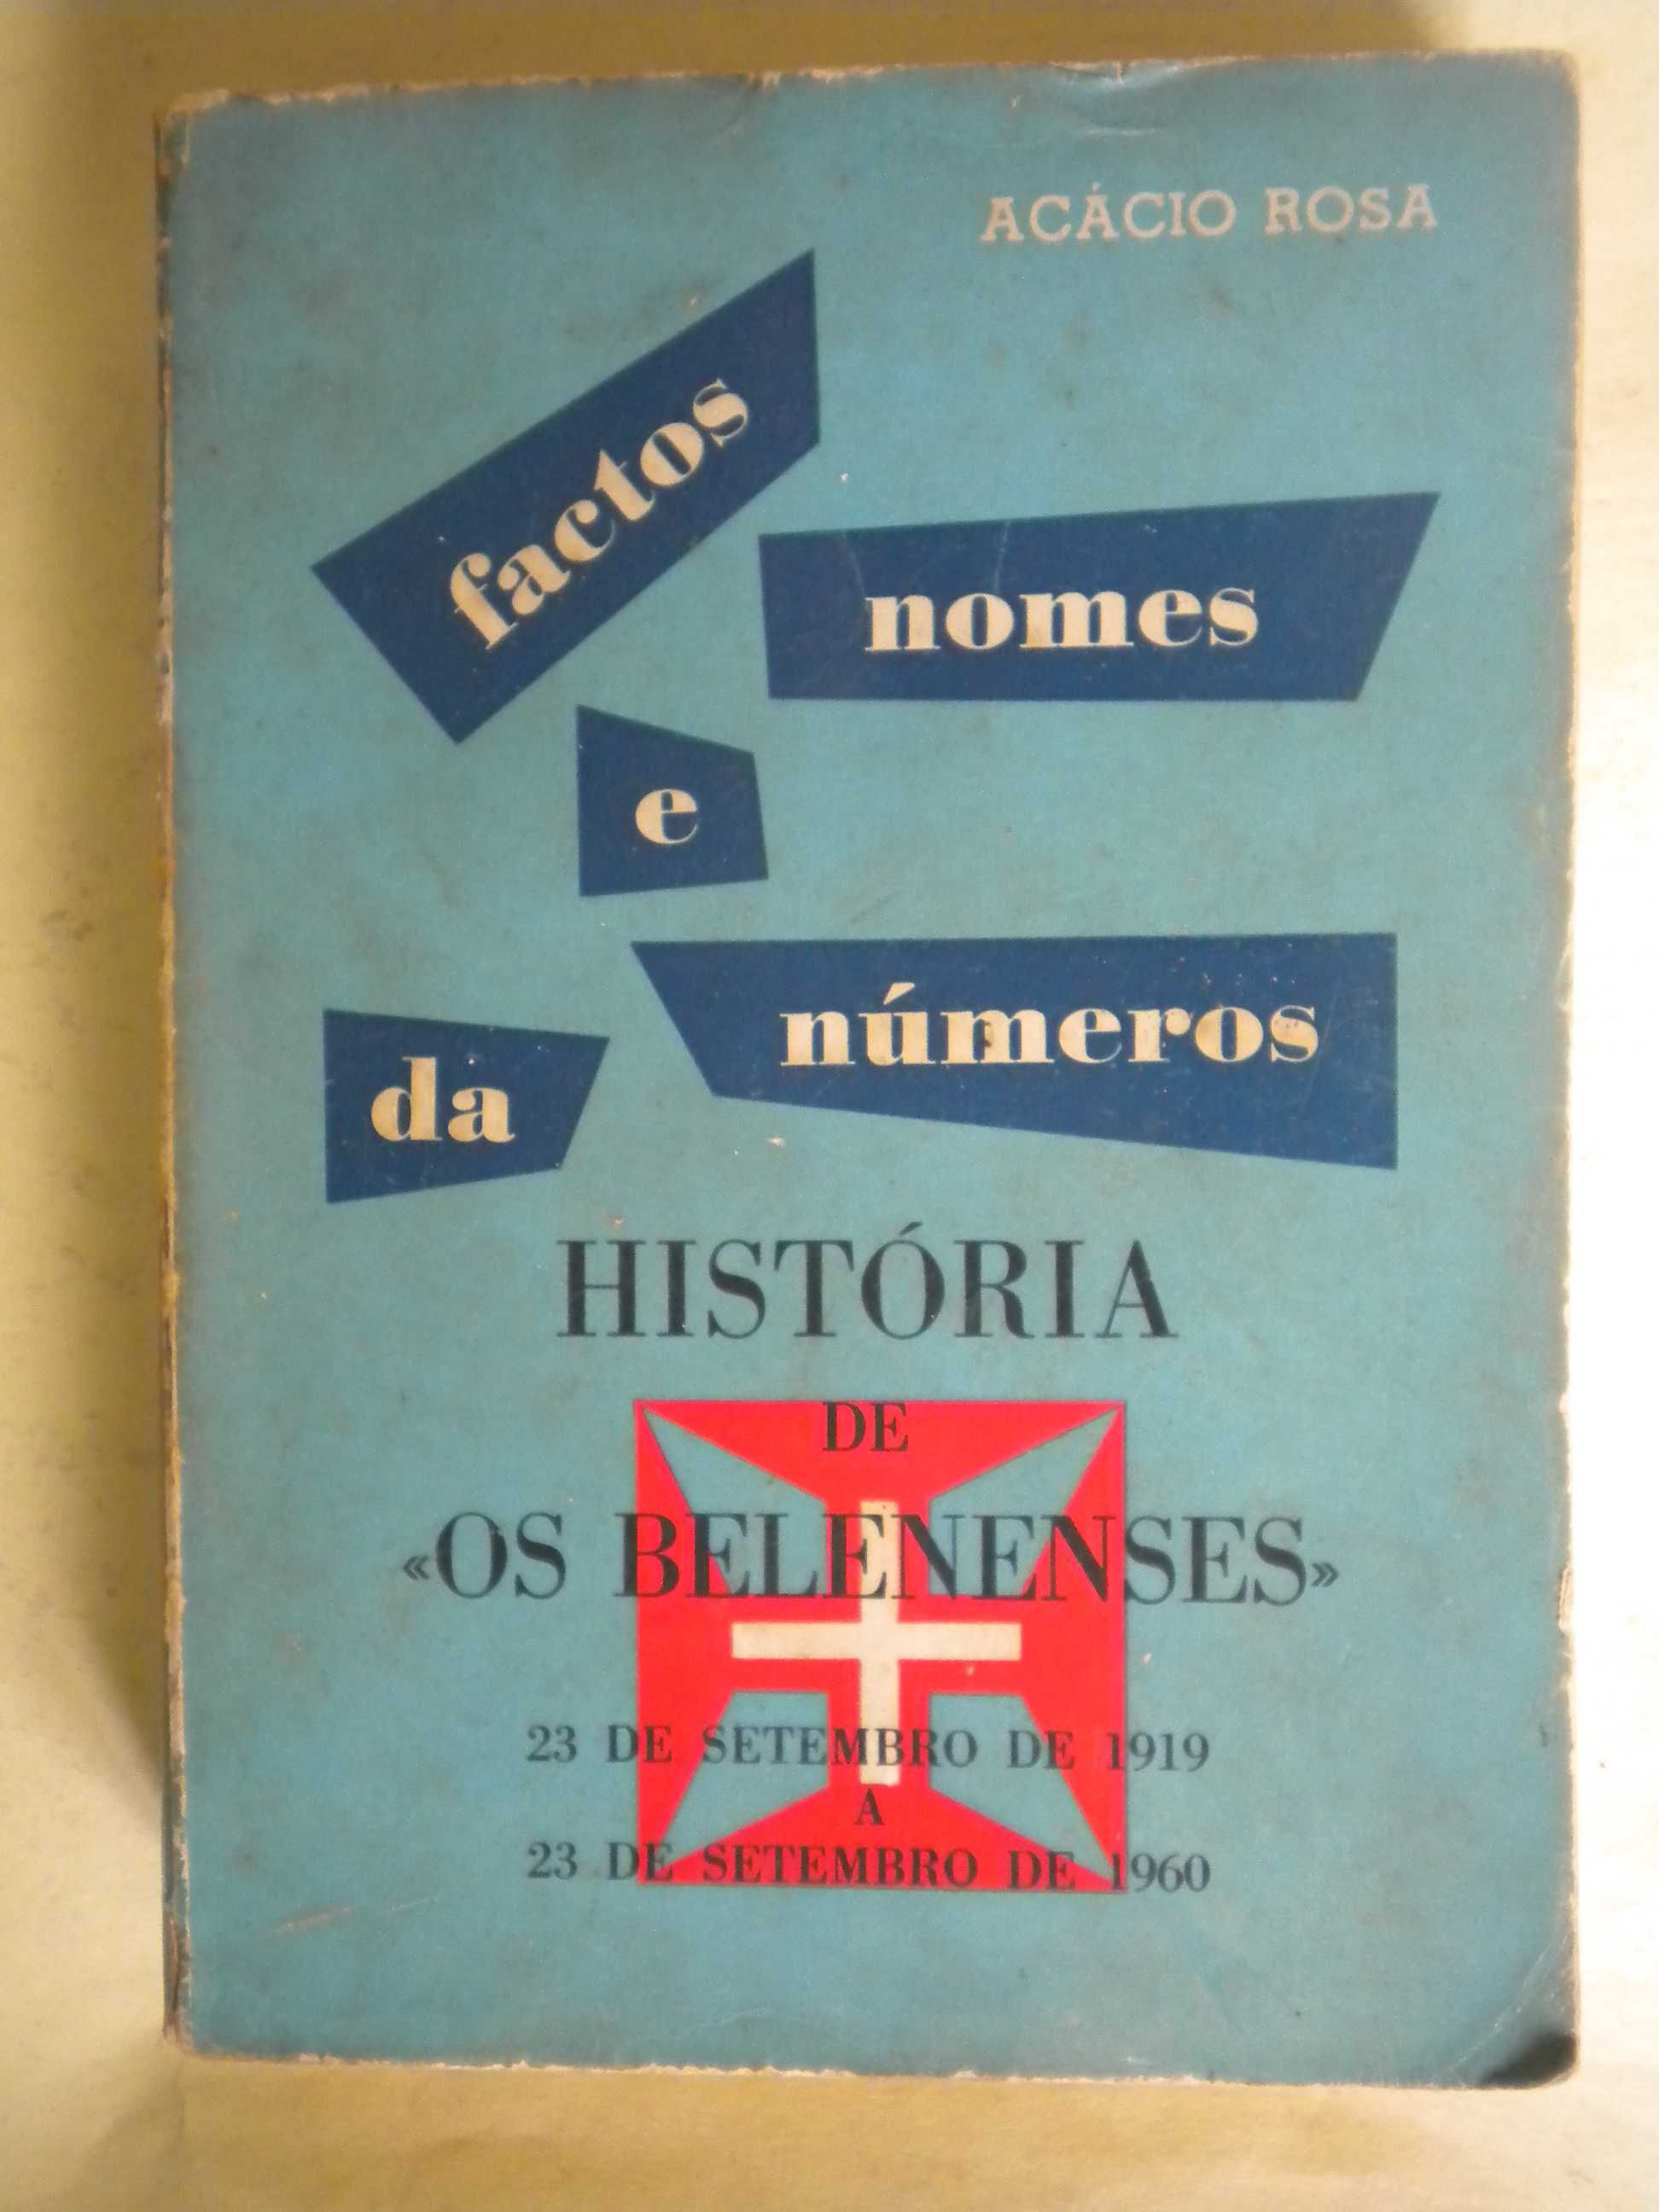 História de " Os Belenenses" de Acácio Rosa